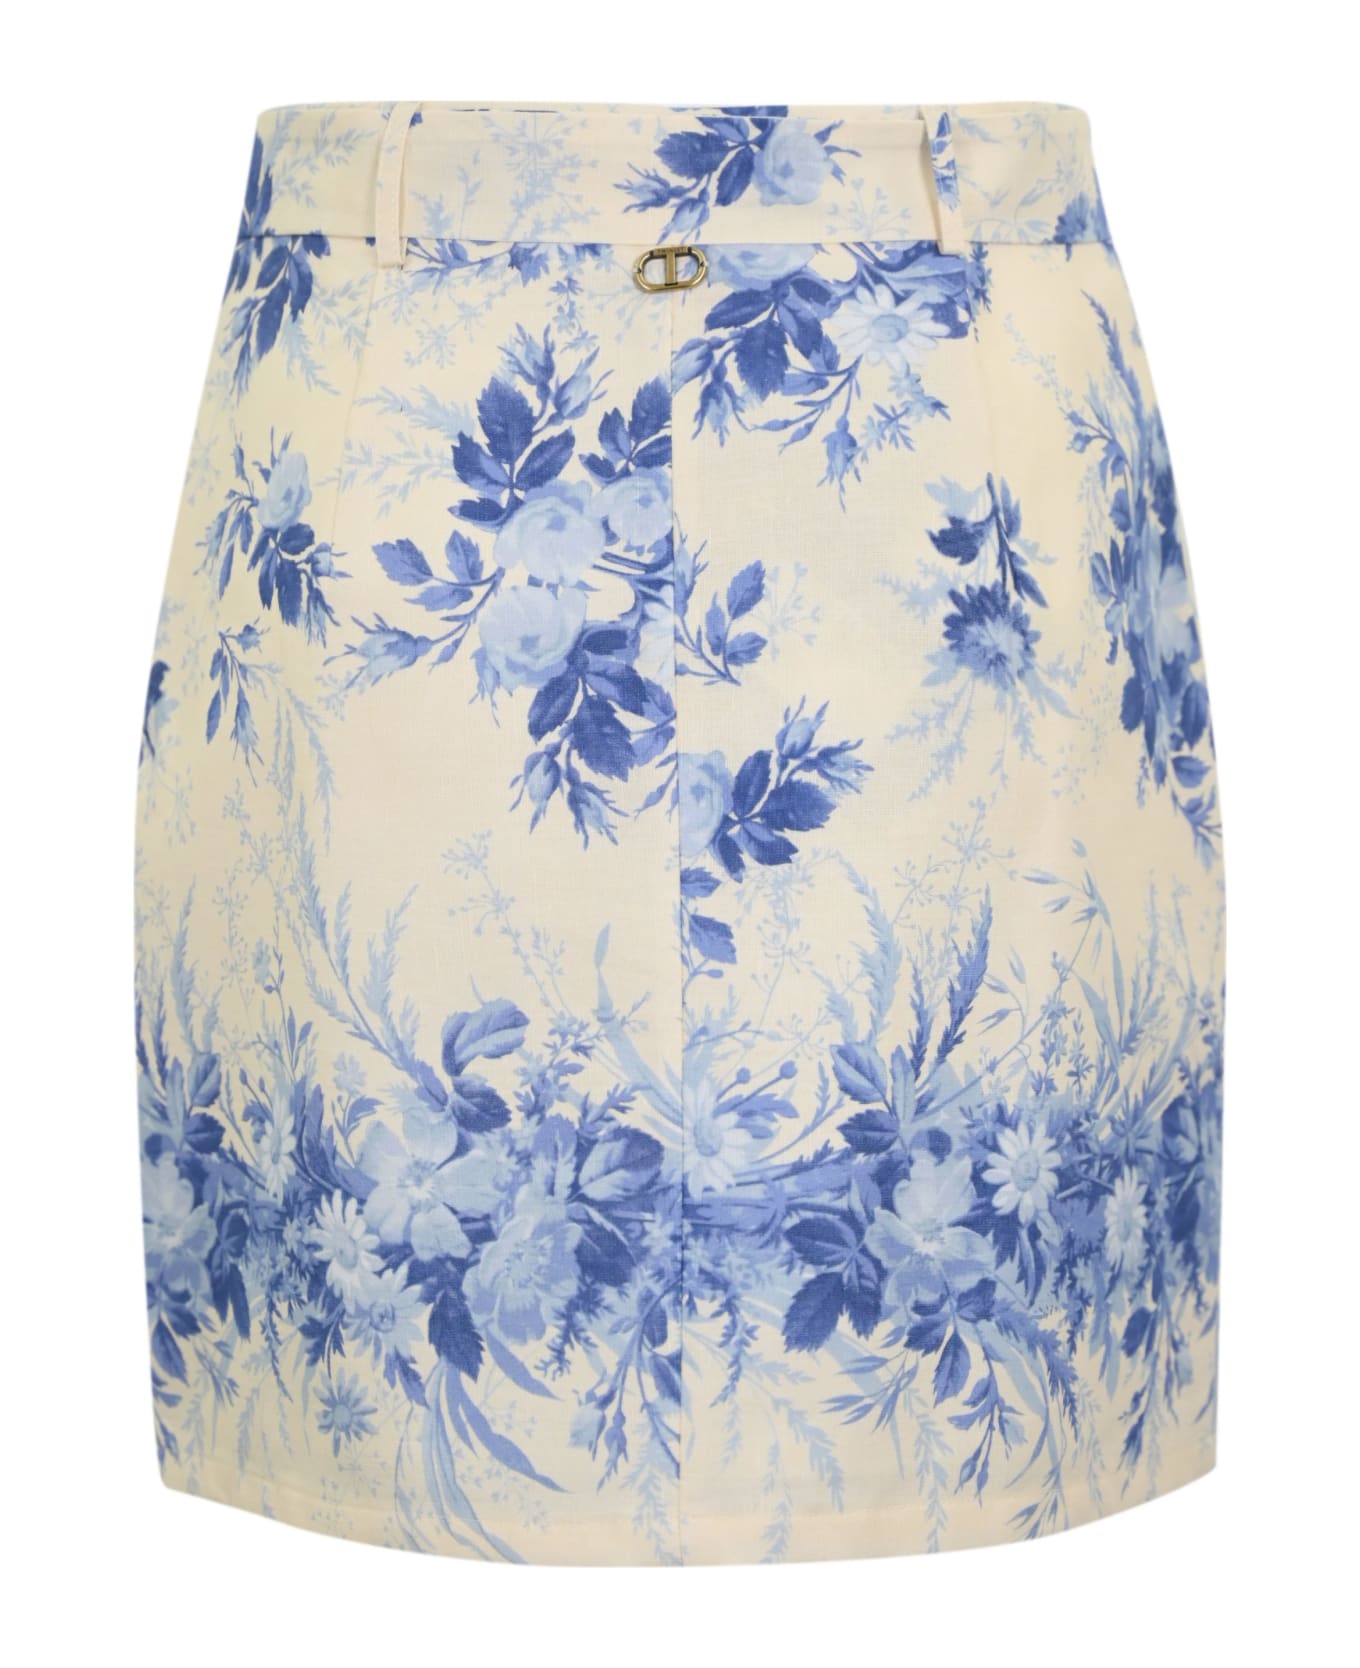 TwinSet Linen Skirt With Print - NEUTRALS/BLUE